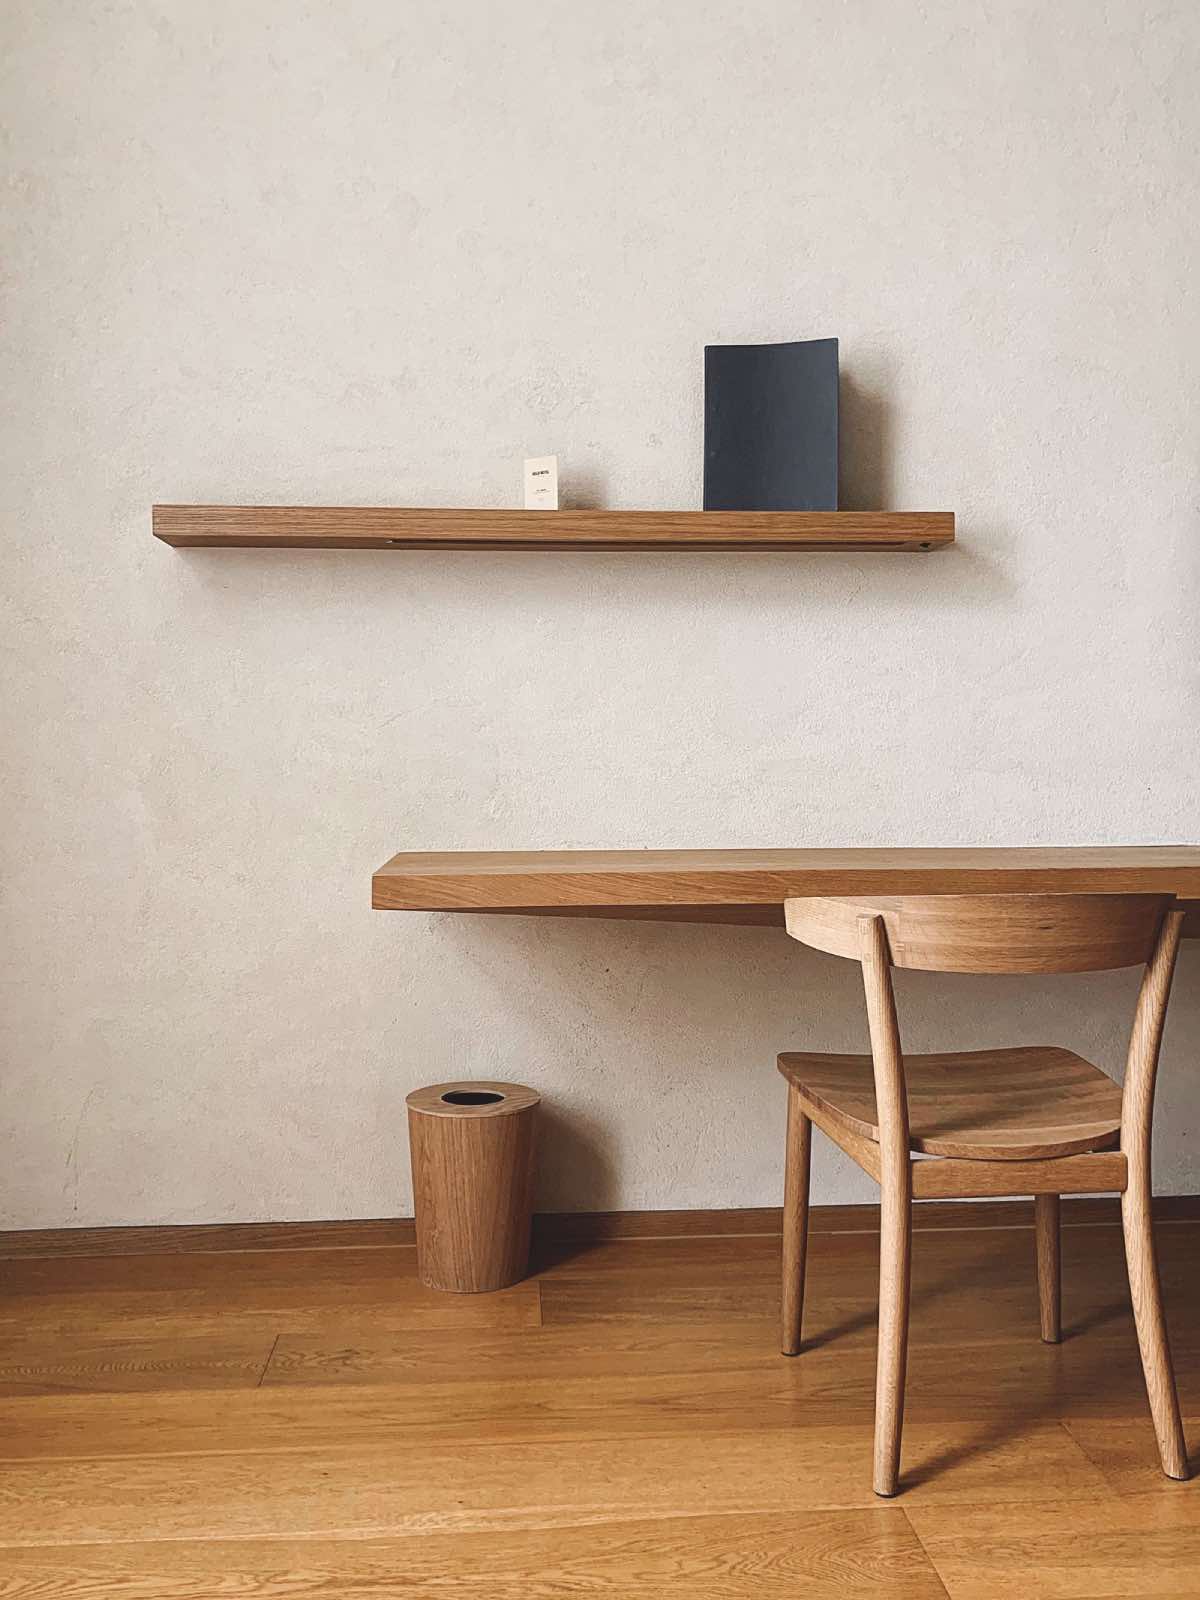 diseño de interiores con muebles de madera sostenible, escritorio, baldas, silla de madera